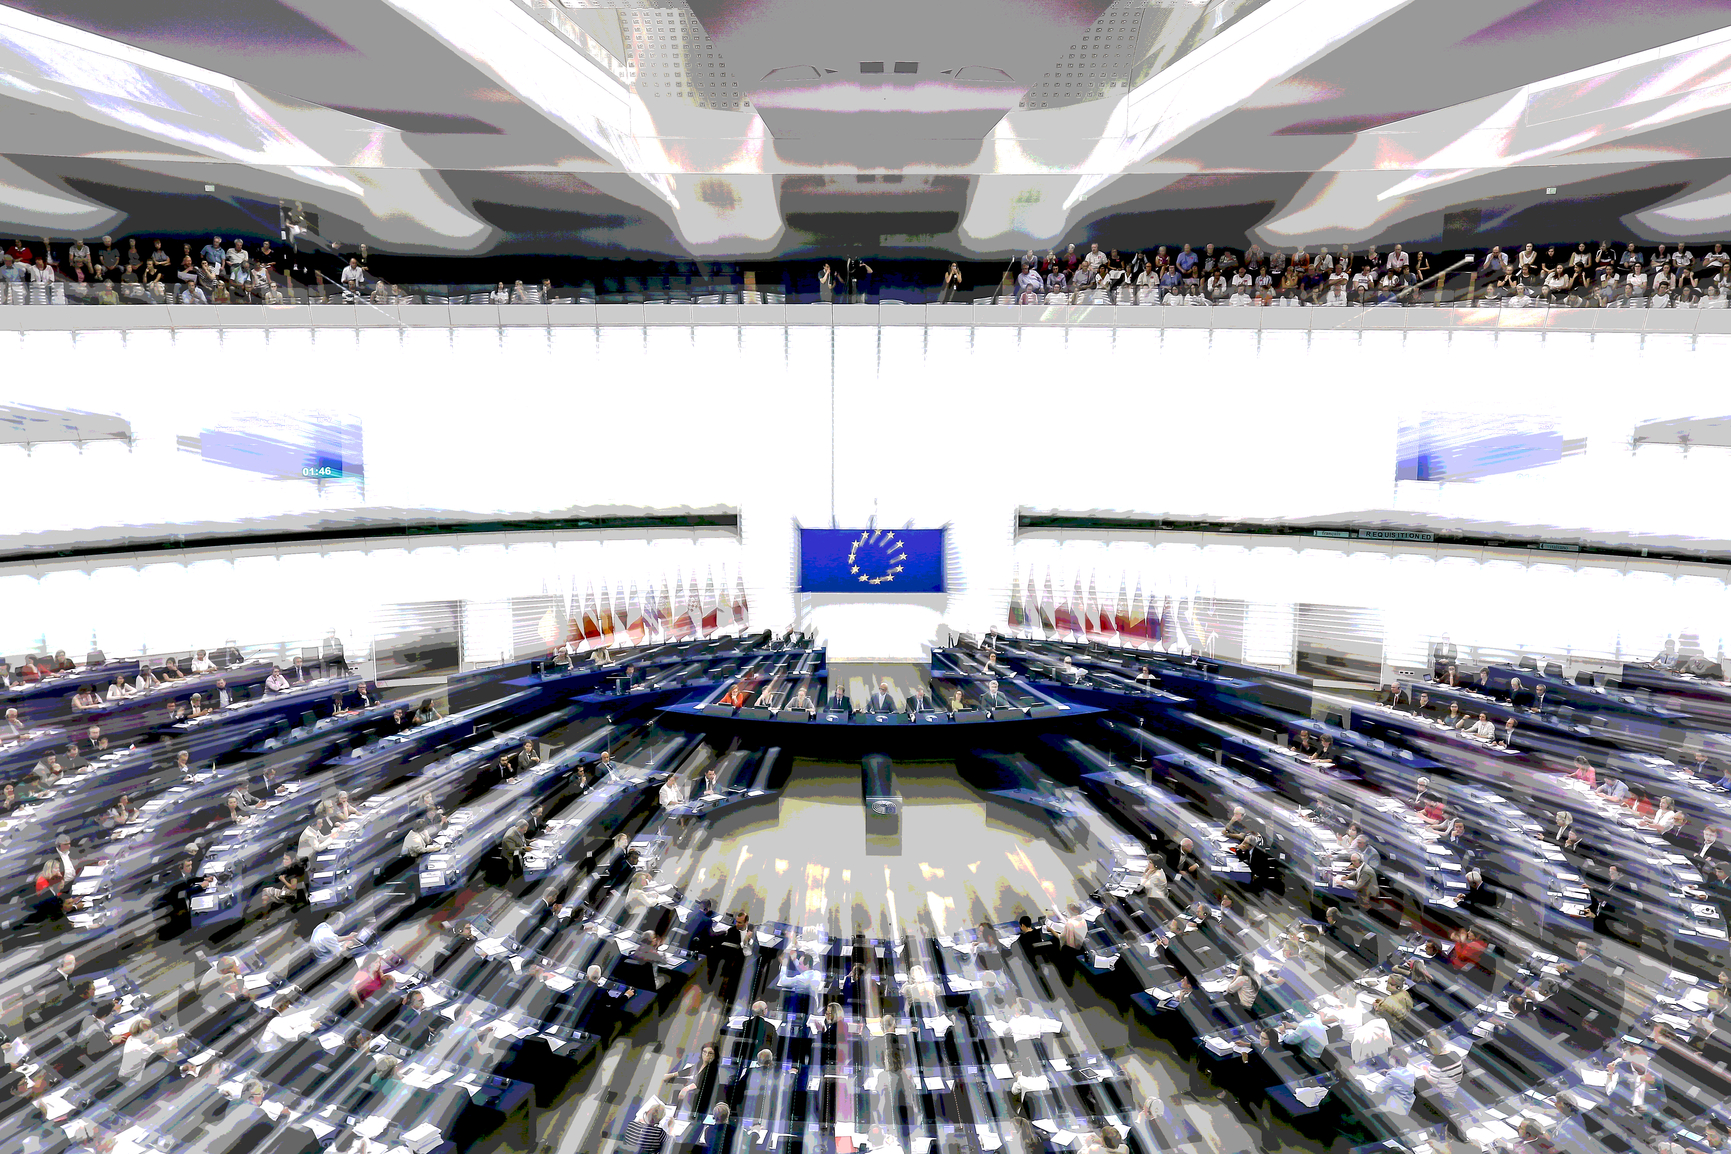 Volby do Evropského parlamentu se konají 24. a 25. května 2019 